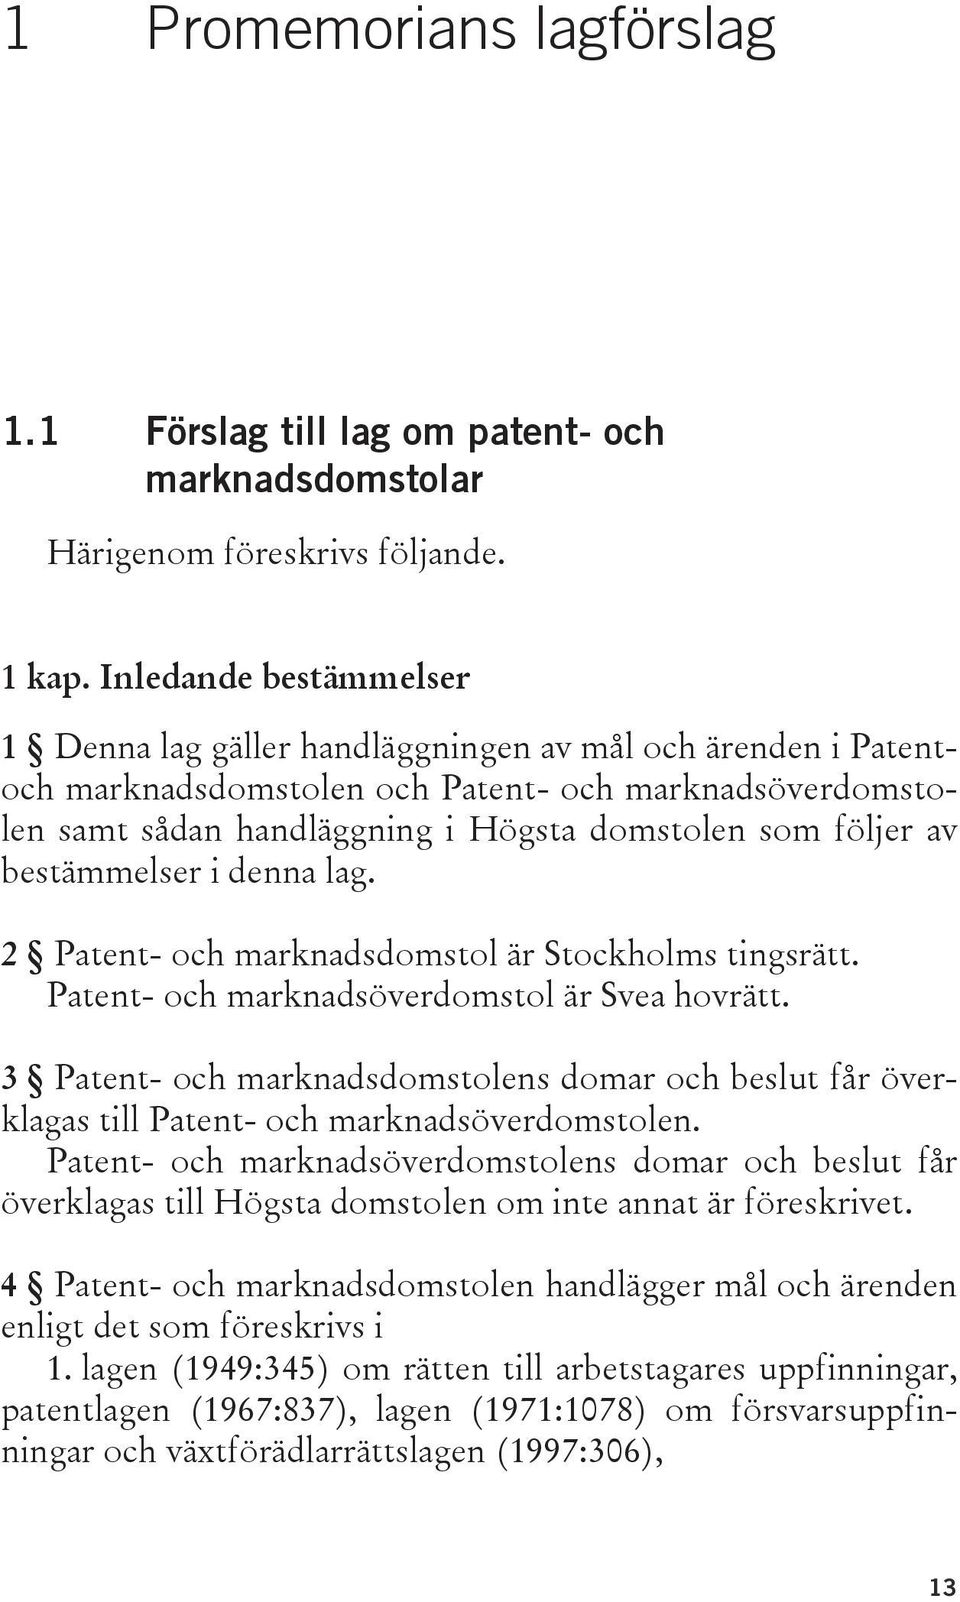 av bestämmelser i denna lag. 2 Patent- och marknadsdomstol är Stockholms tingsrätt. Patent- och marknadsöverdomstol är Svea hovrätt.